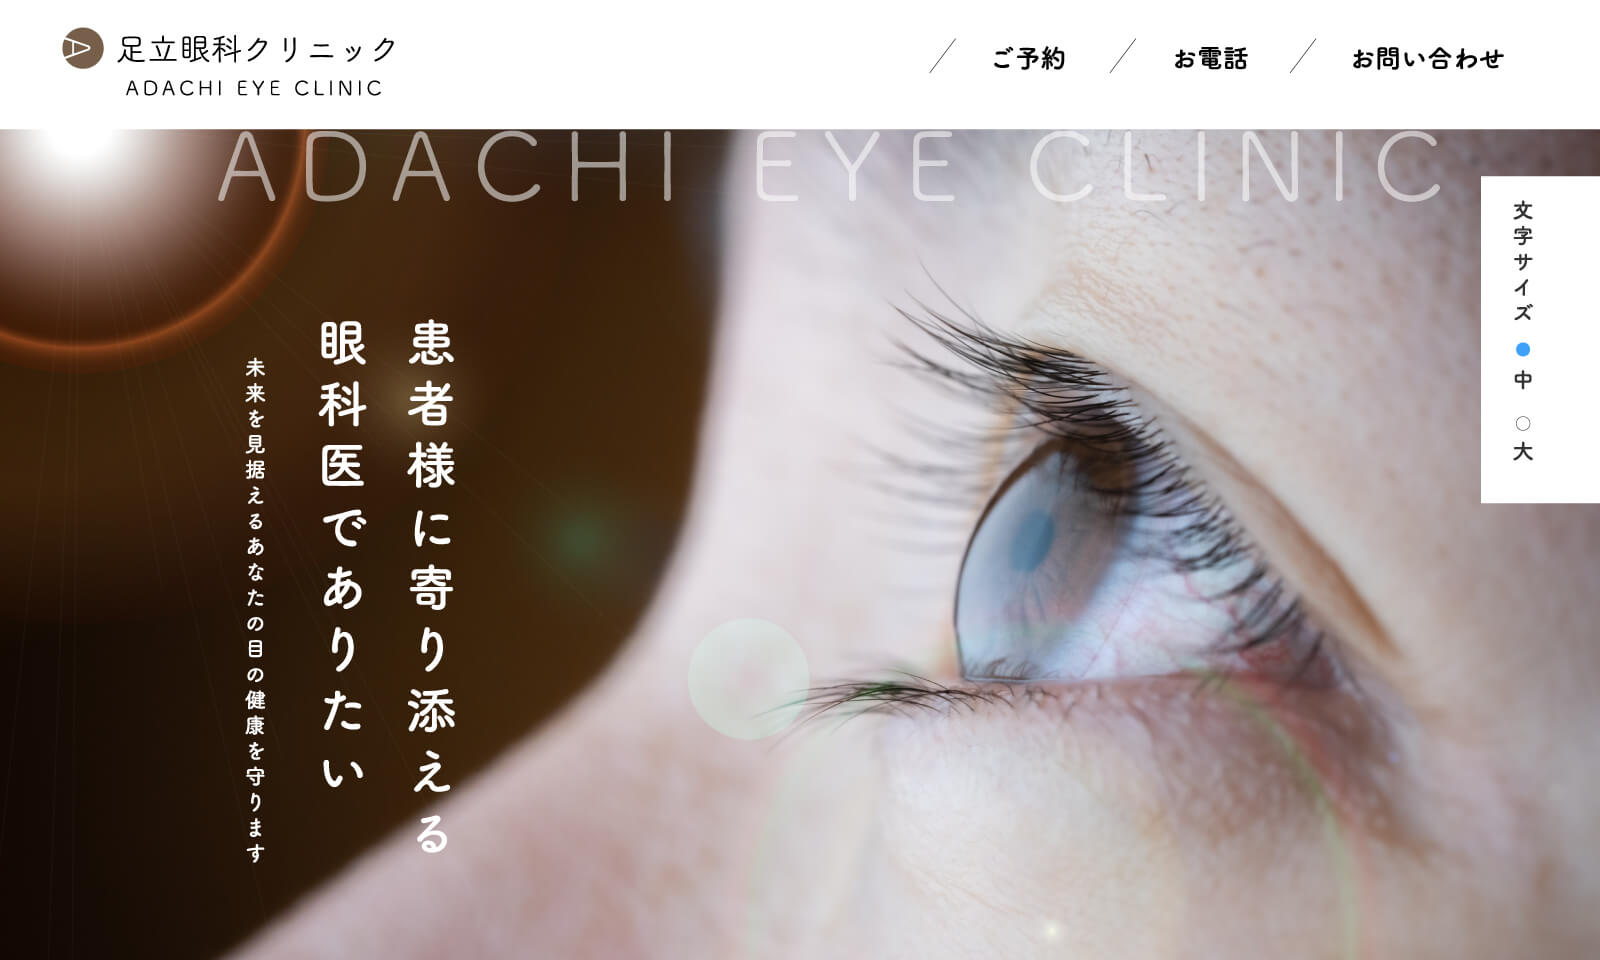 眼科クリニックのホームページ